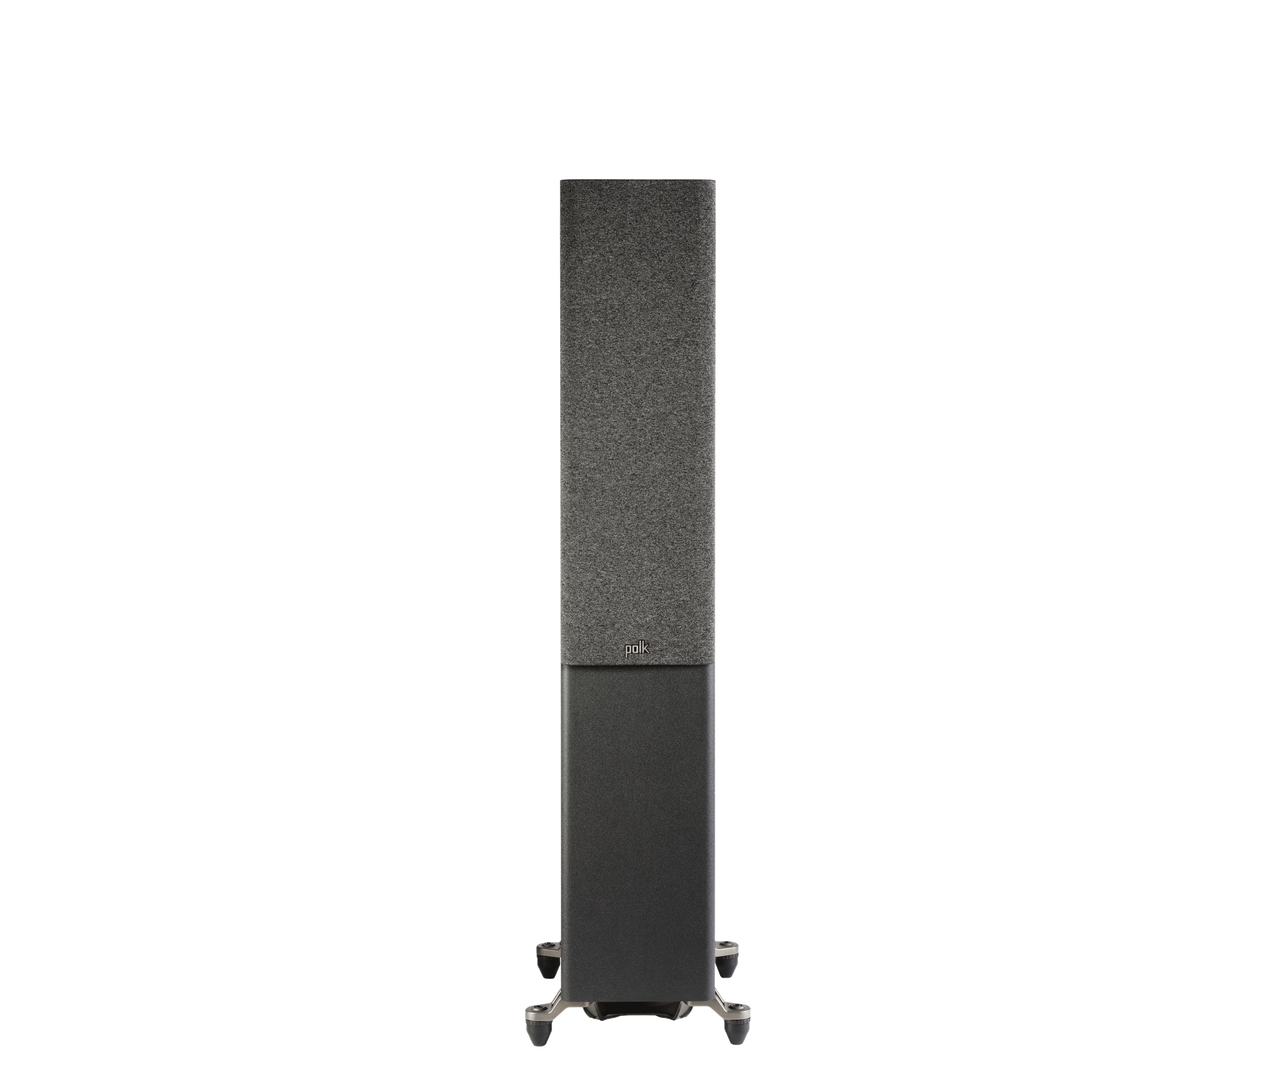 Polk R600 Reserve Series Tower Speakers